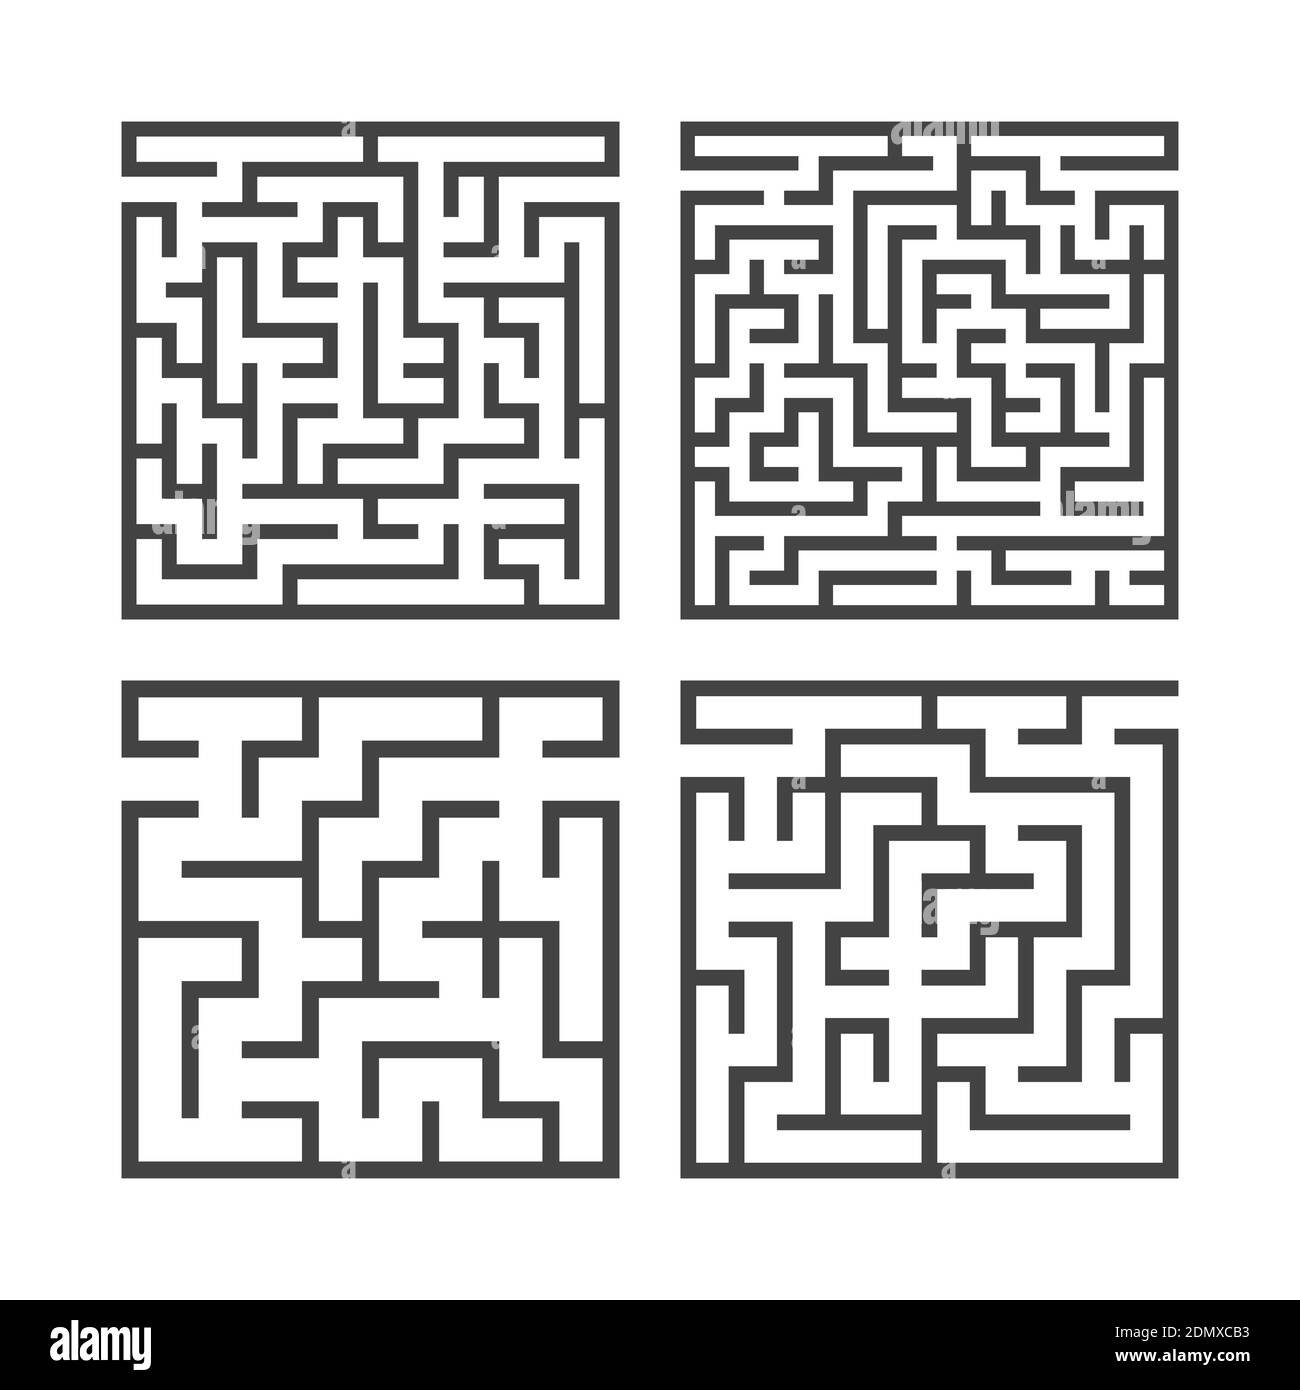 Ein Satz quadratischer Labyrinthe mit verschiedenen Schwierigkeitsgraden. Spiel für Kinder. Puzzle für Kinder. Ein Eingang, ein Ausgang. Labyrinth-Rätsel. Flacher Vektor i. Stock Vektor